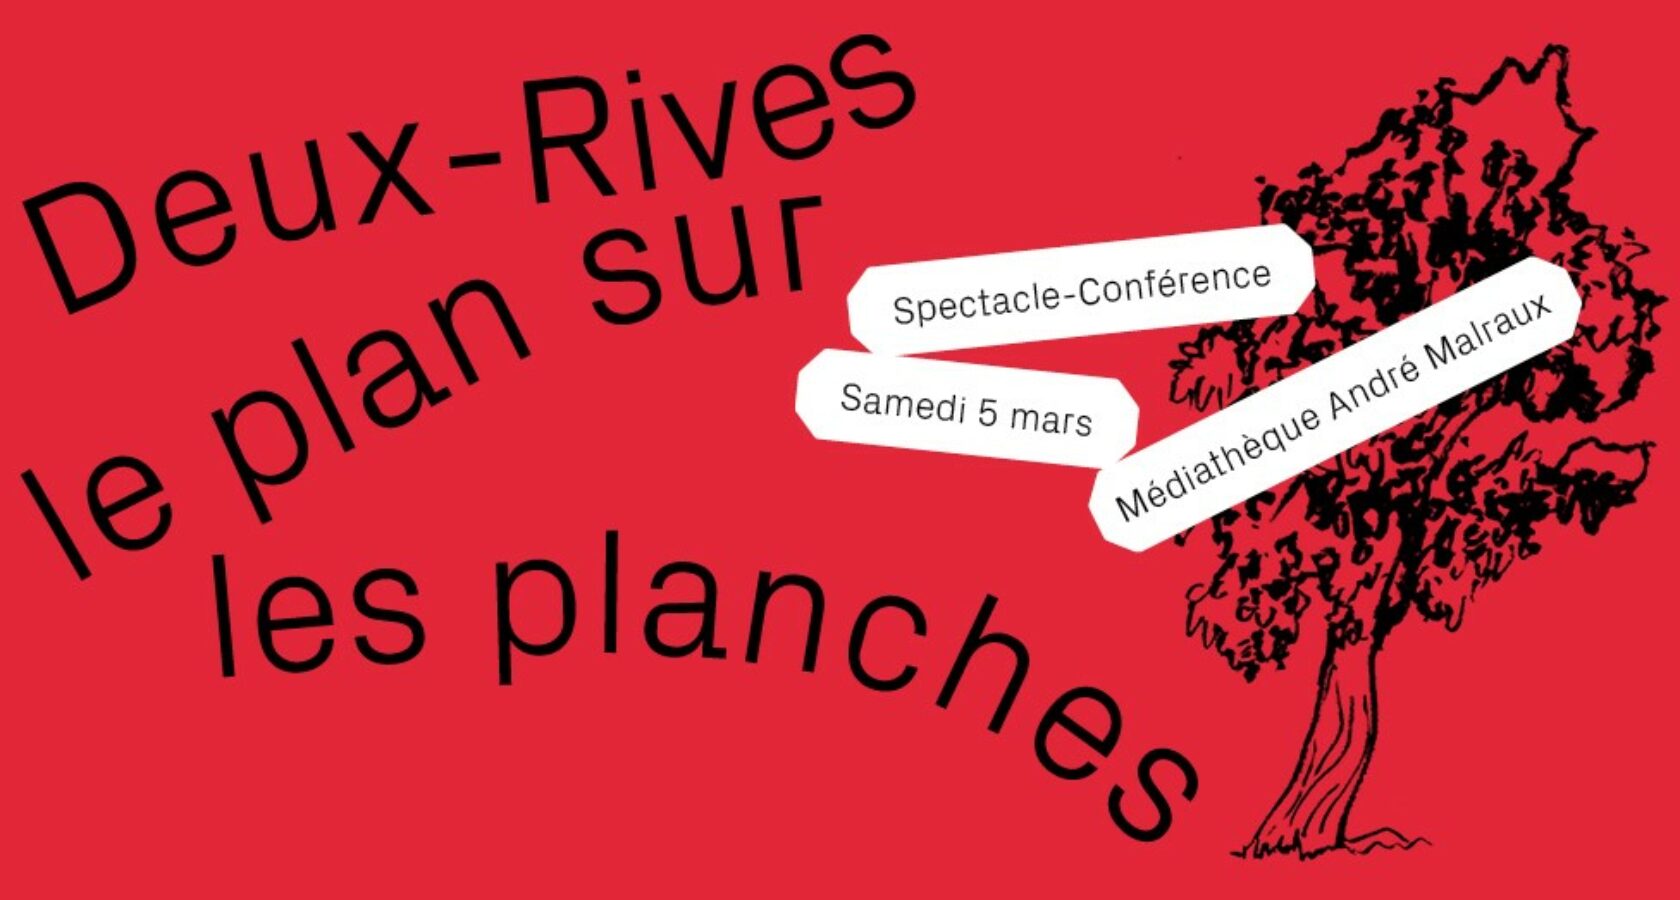 Spectacle-Conférence le Samedi 05 Mars à la Médiathèque André Malraux - Deux-Rives le plan sur les planches